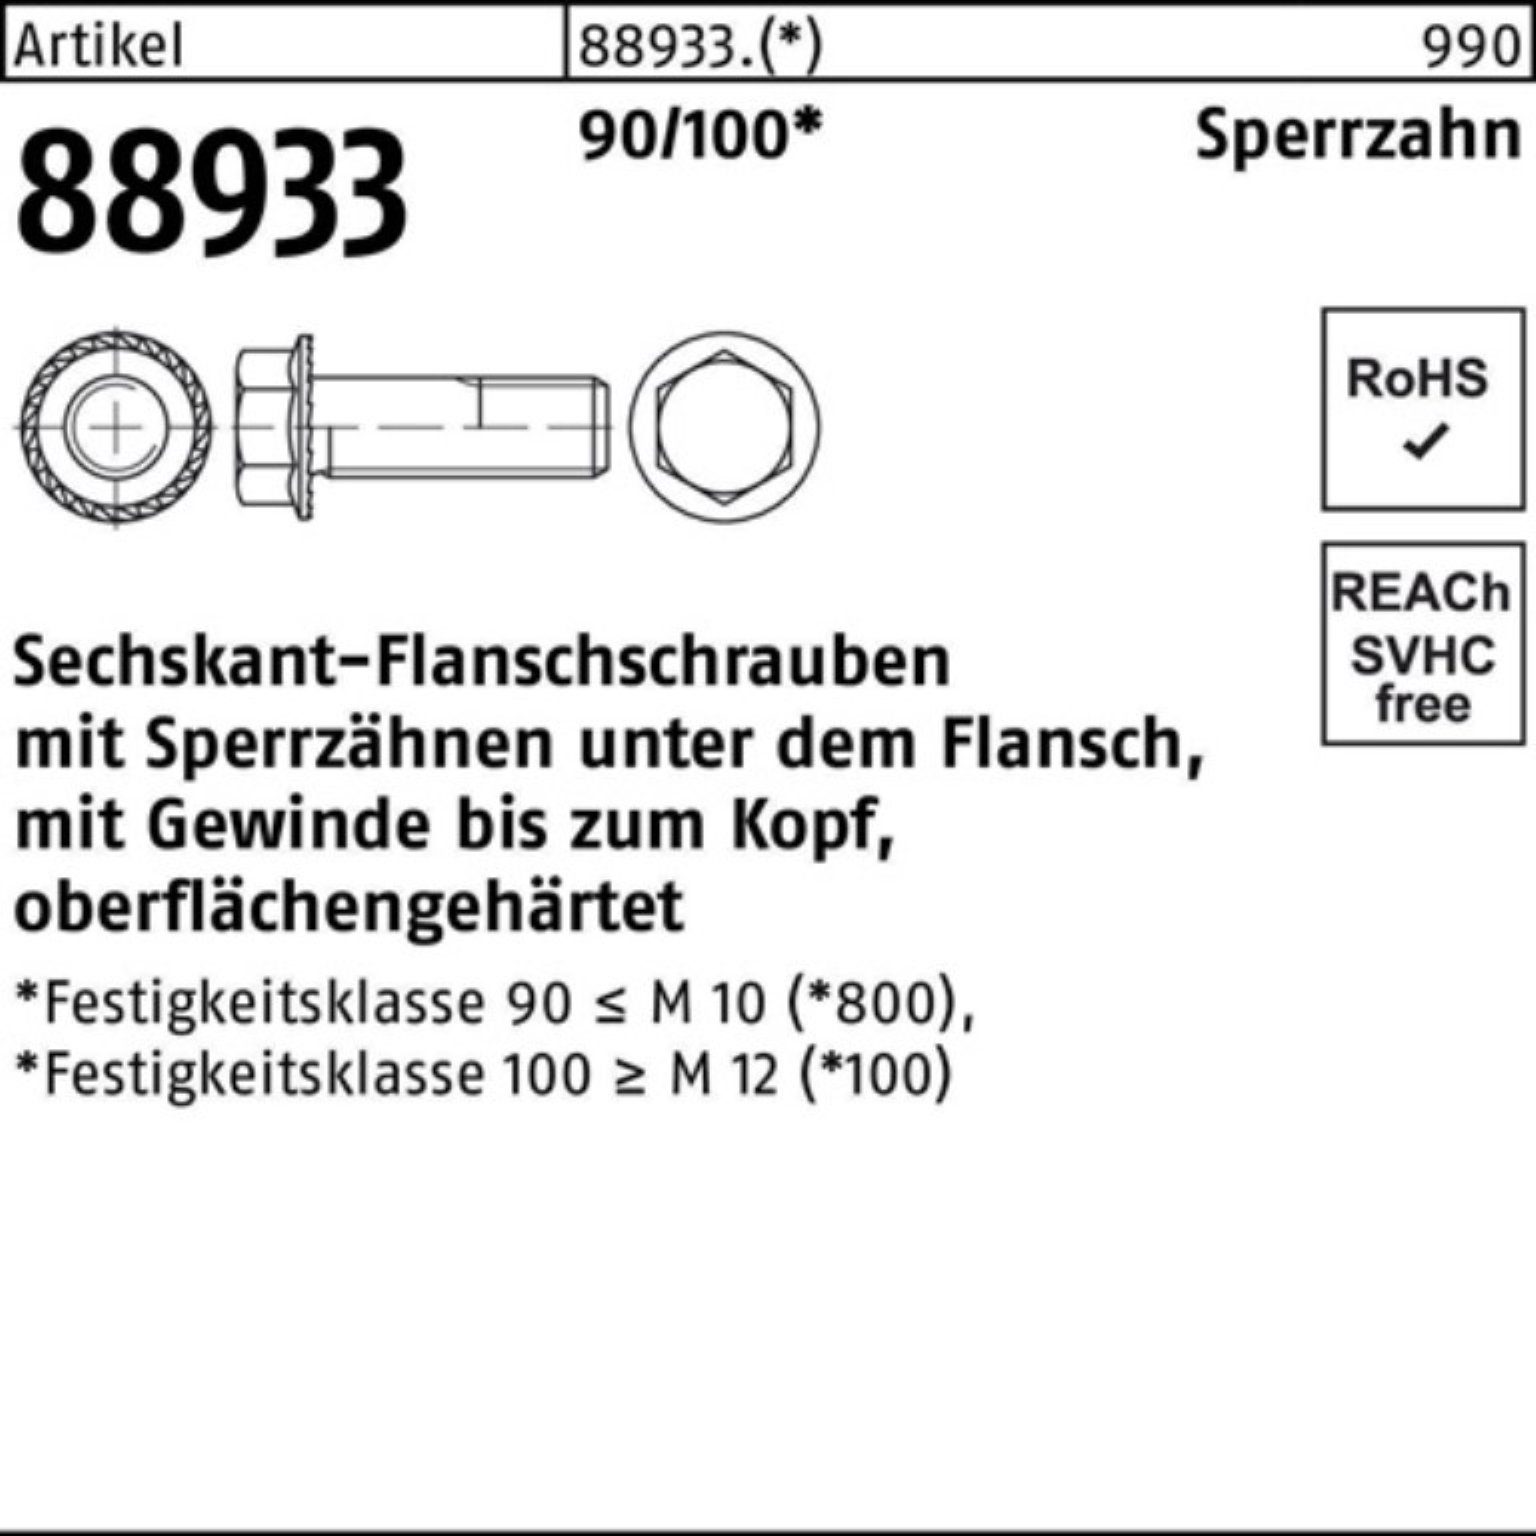 Schraube 88933 VG 90/100 100er 50 Pack Sechskantflanschschraube Sperrz. R Reyher M12x